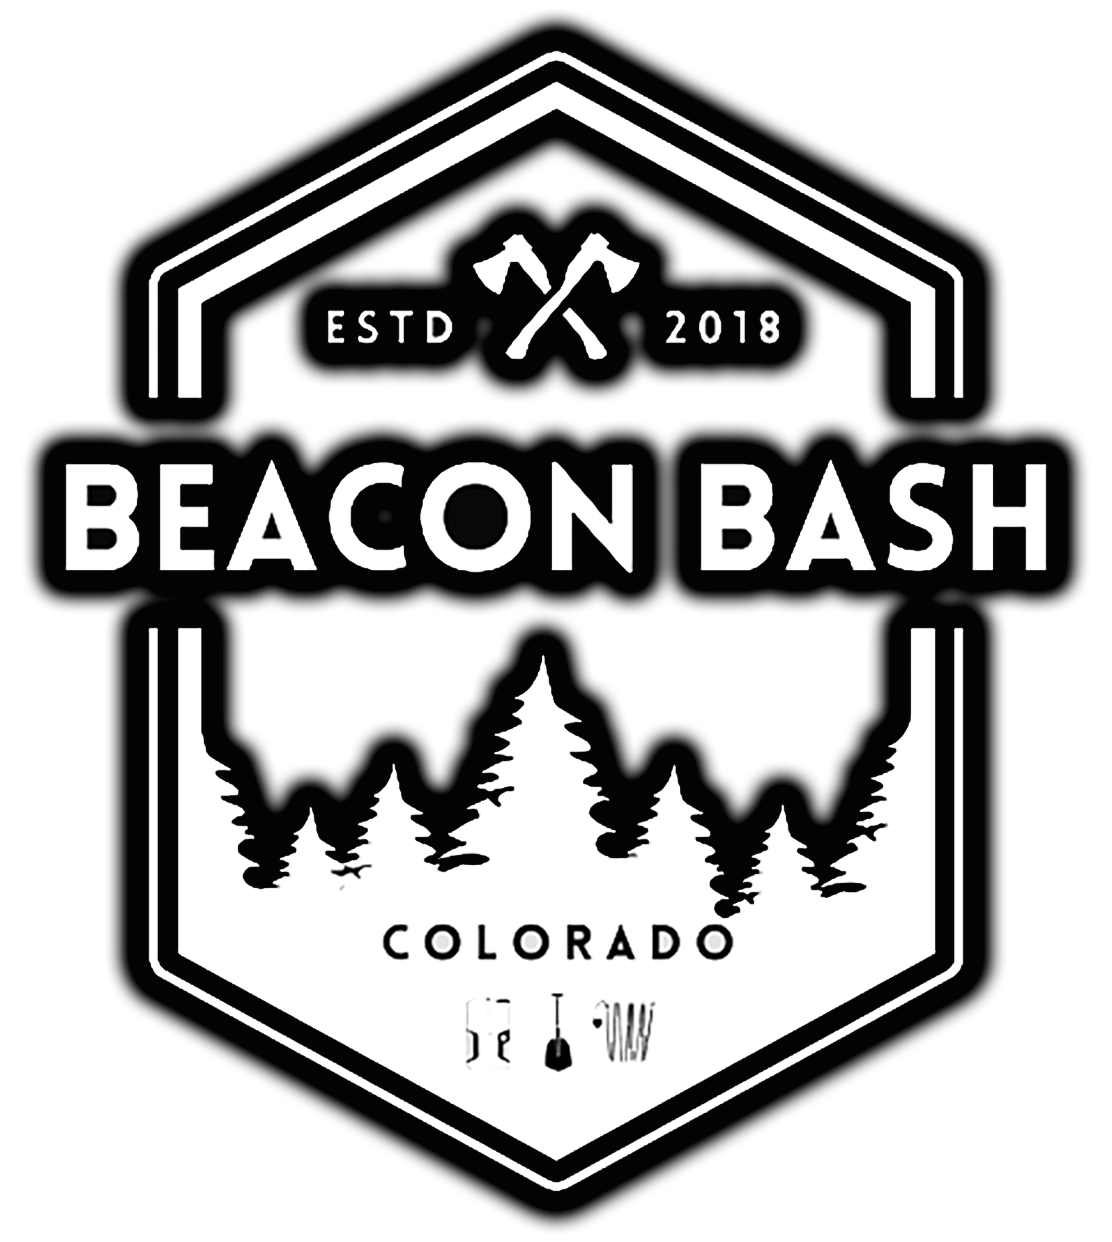 Beacon Bash